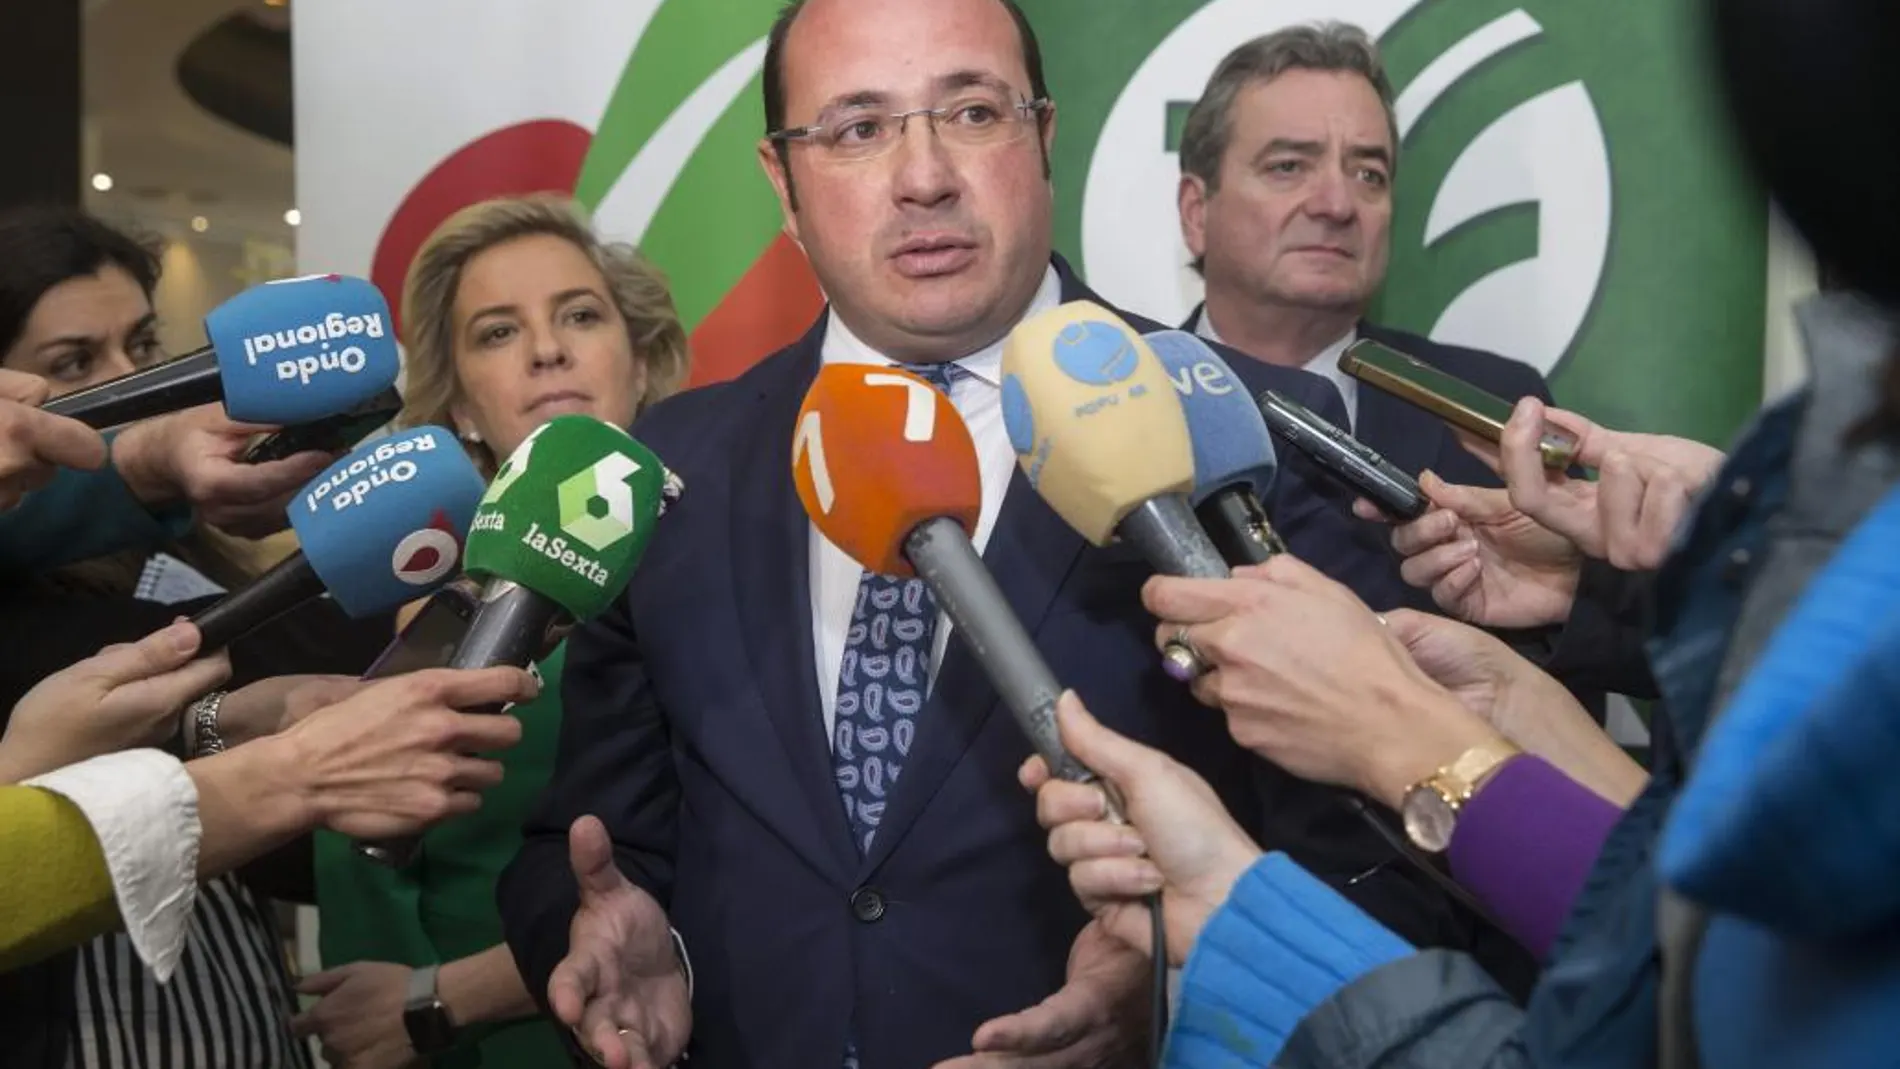 El presidente de la Región de Murcia, Pedro Antonio Sánchez (c), atiende a la prensa en un acto en Murcia.